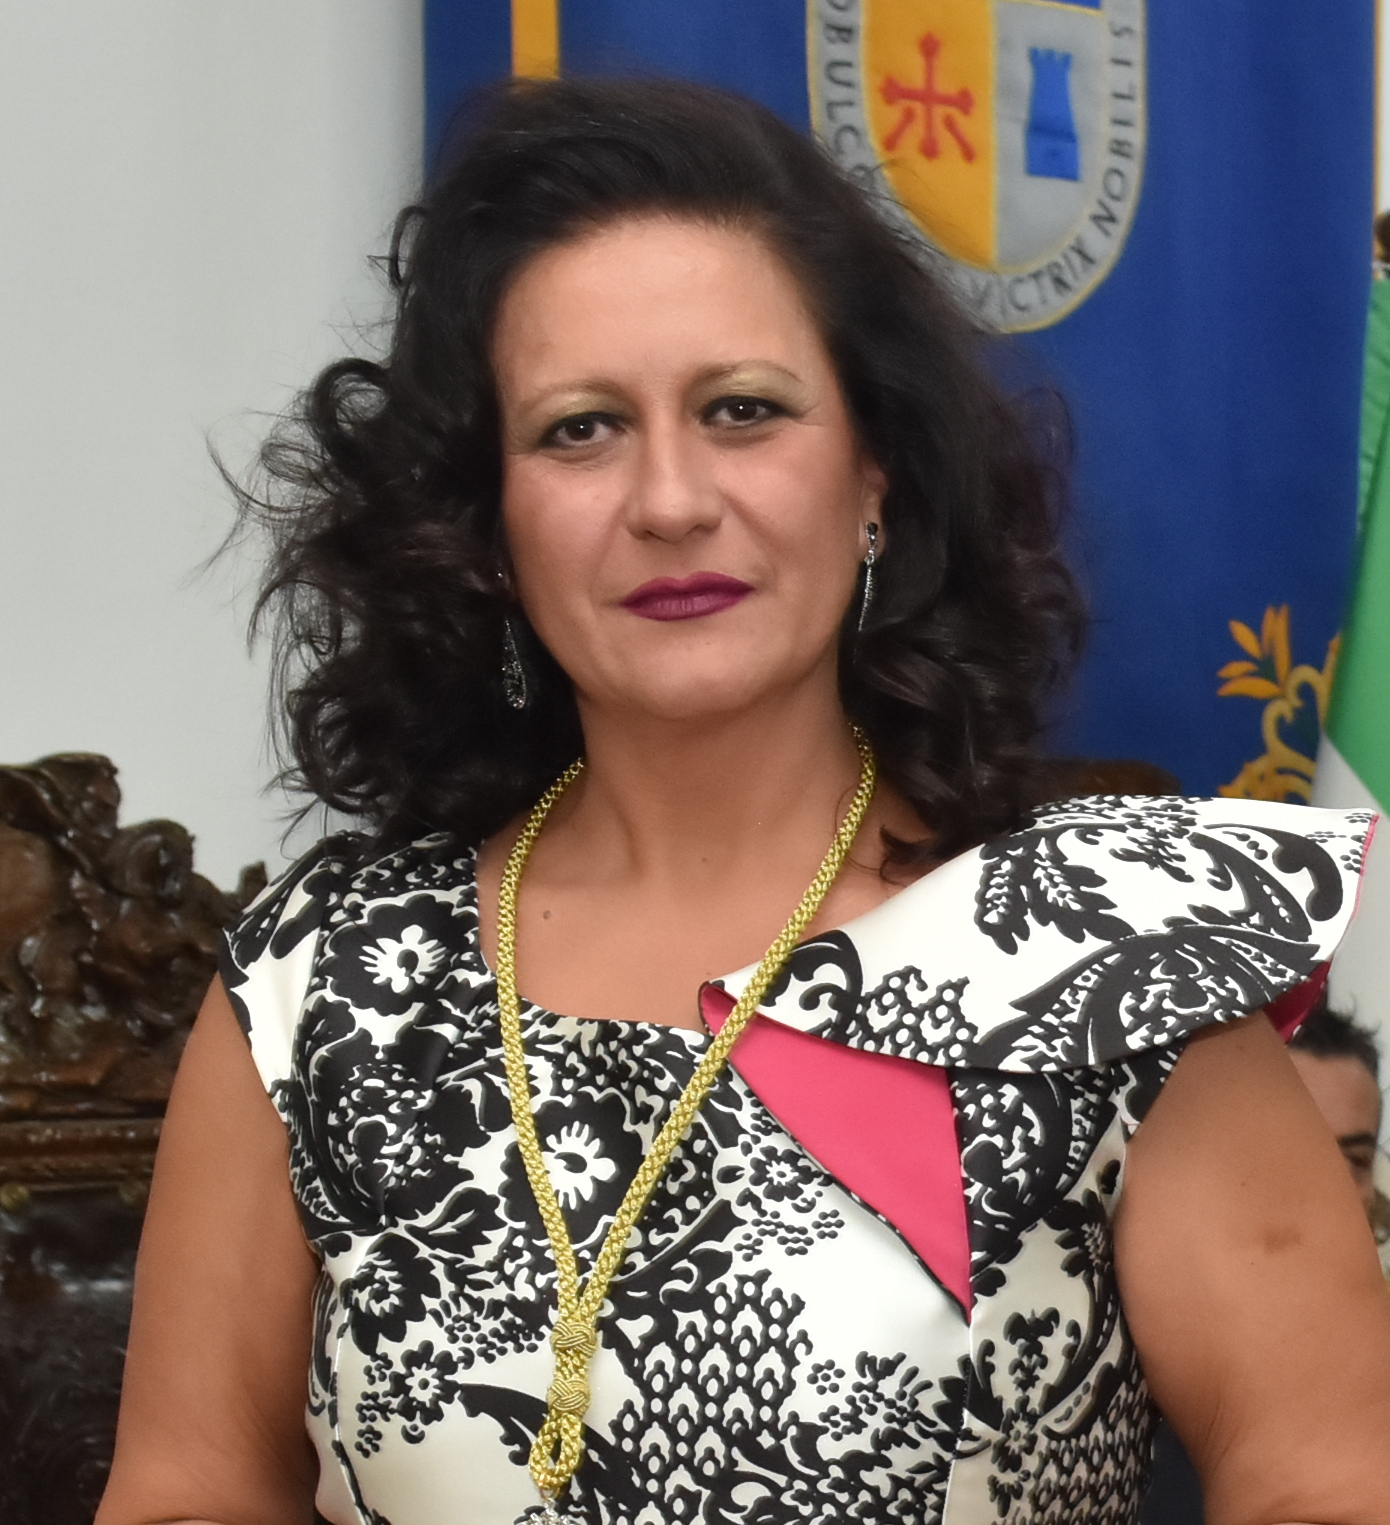 Isabel María Aguilera Morente